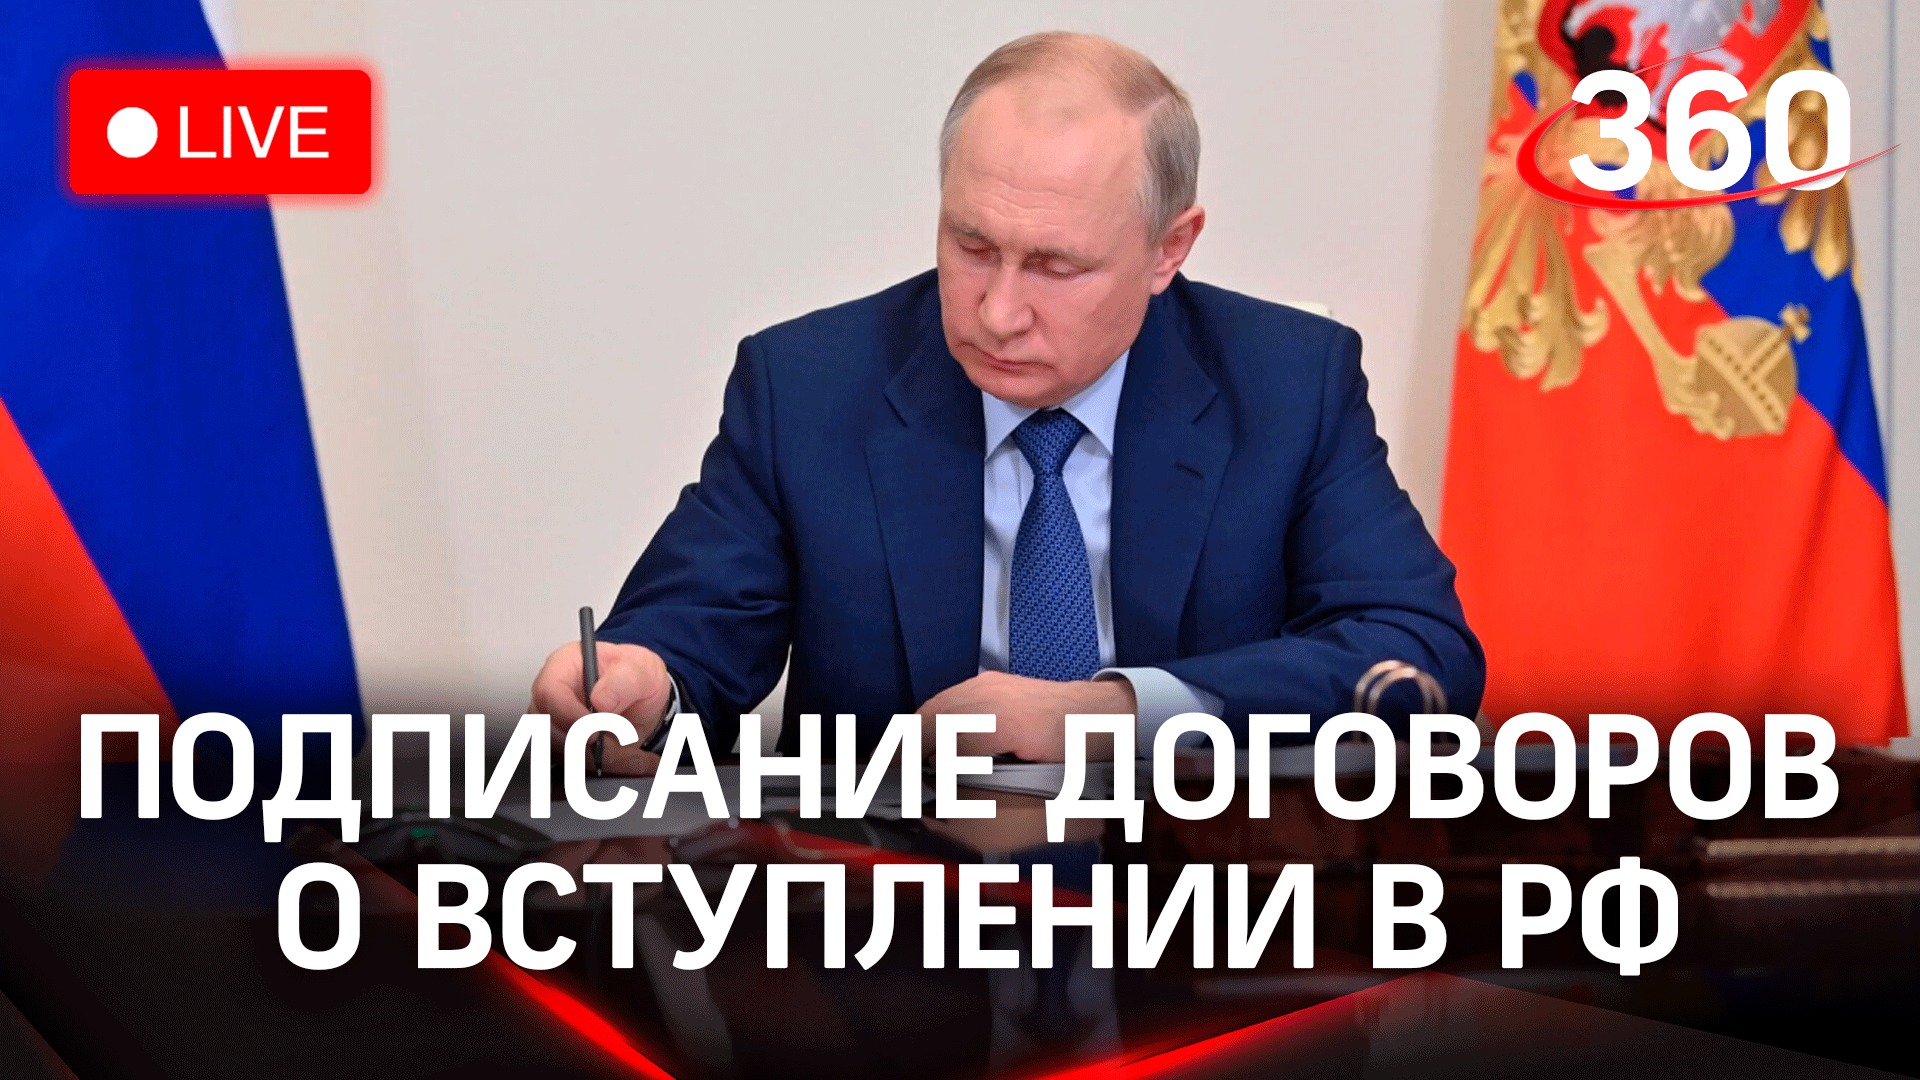 Путин выступает на церемонии подписания договоров по итогам референдумов о присоединении к России